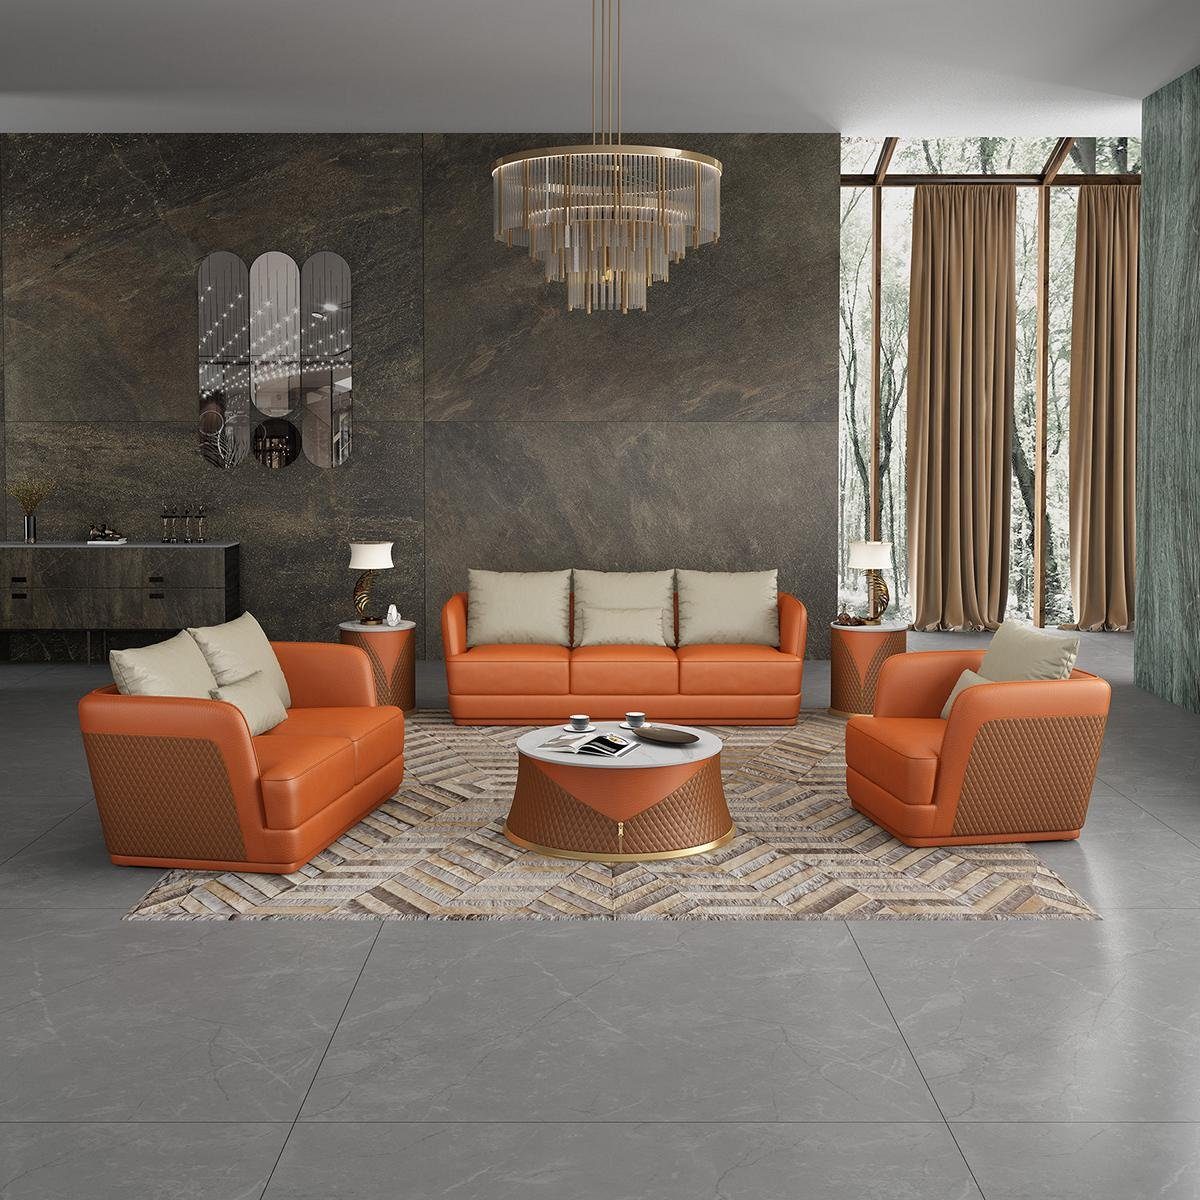 JVmoebel 3-Sitzer, Luxus Sofa Design 3 Orange Moderne Sitzer Polster Couch Sofas